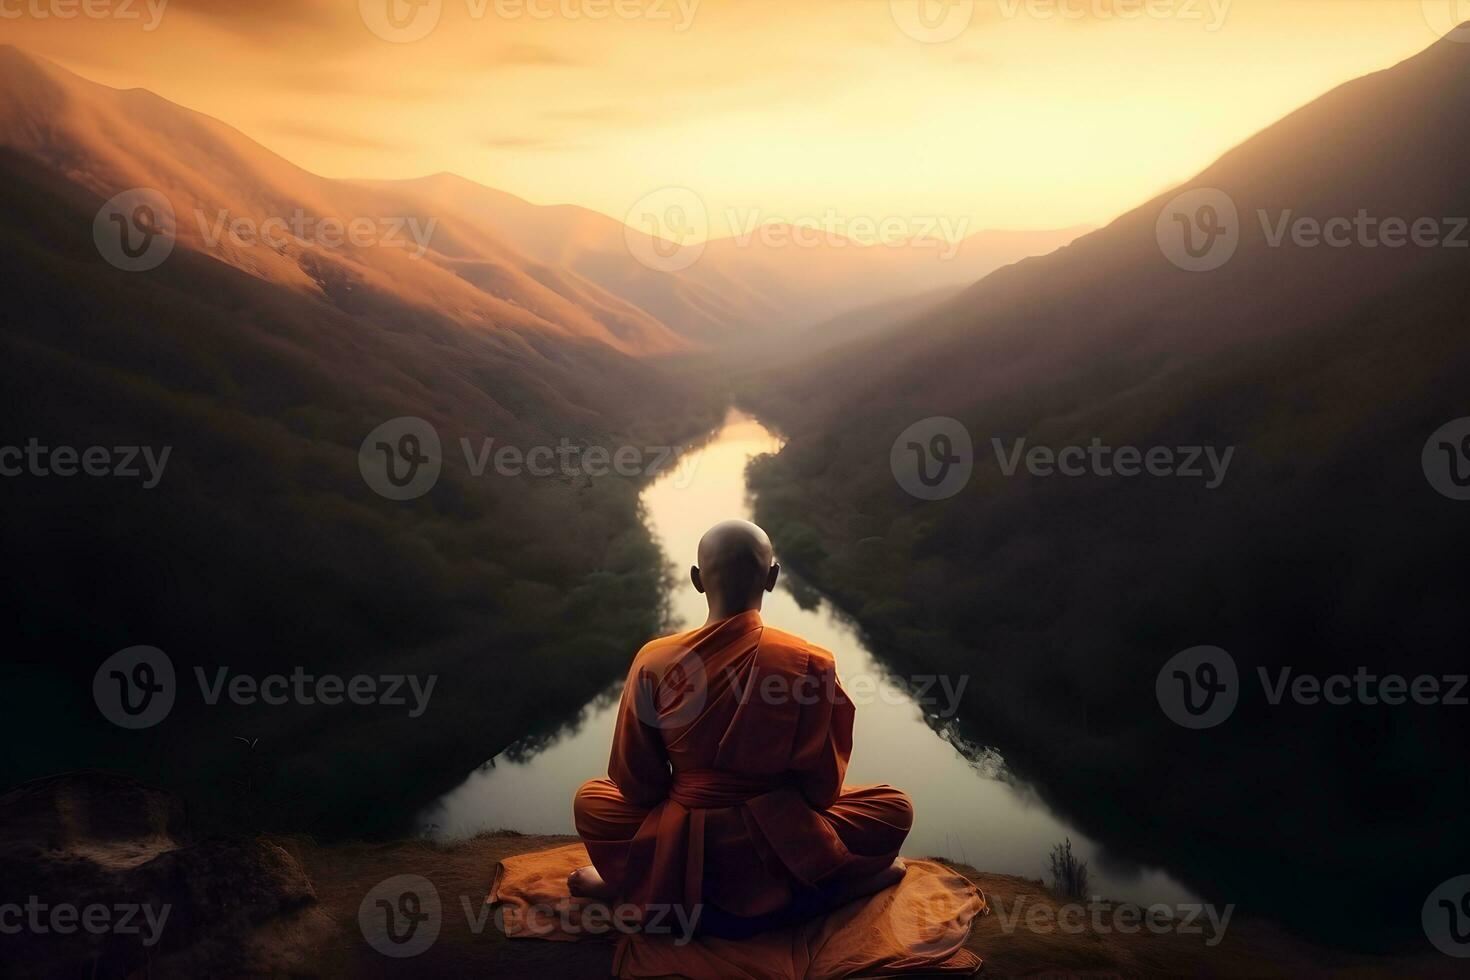 bouddhiste moine dans méditation sur sommet de la montagne à magnifique le coucher du soleil ou lever du soleil photo